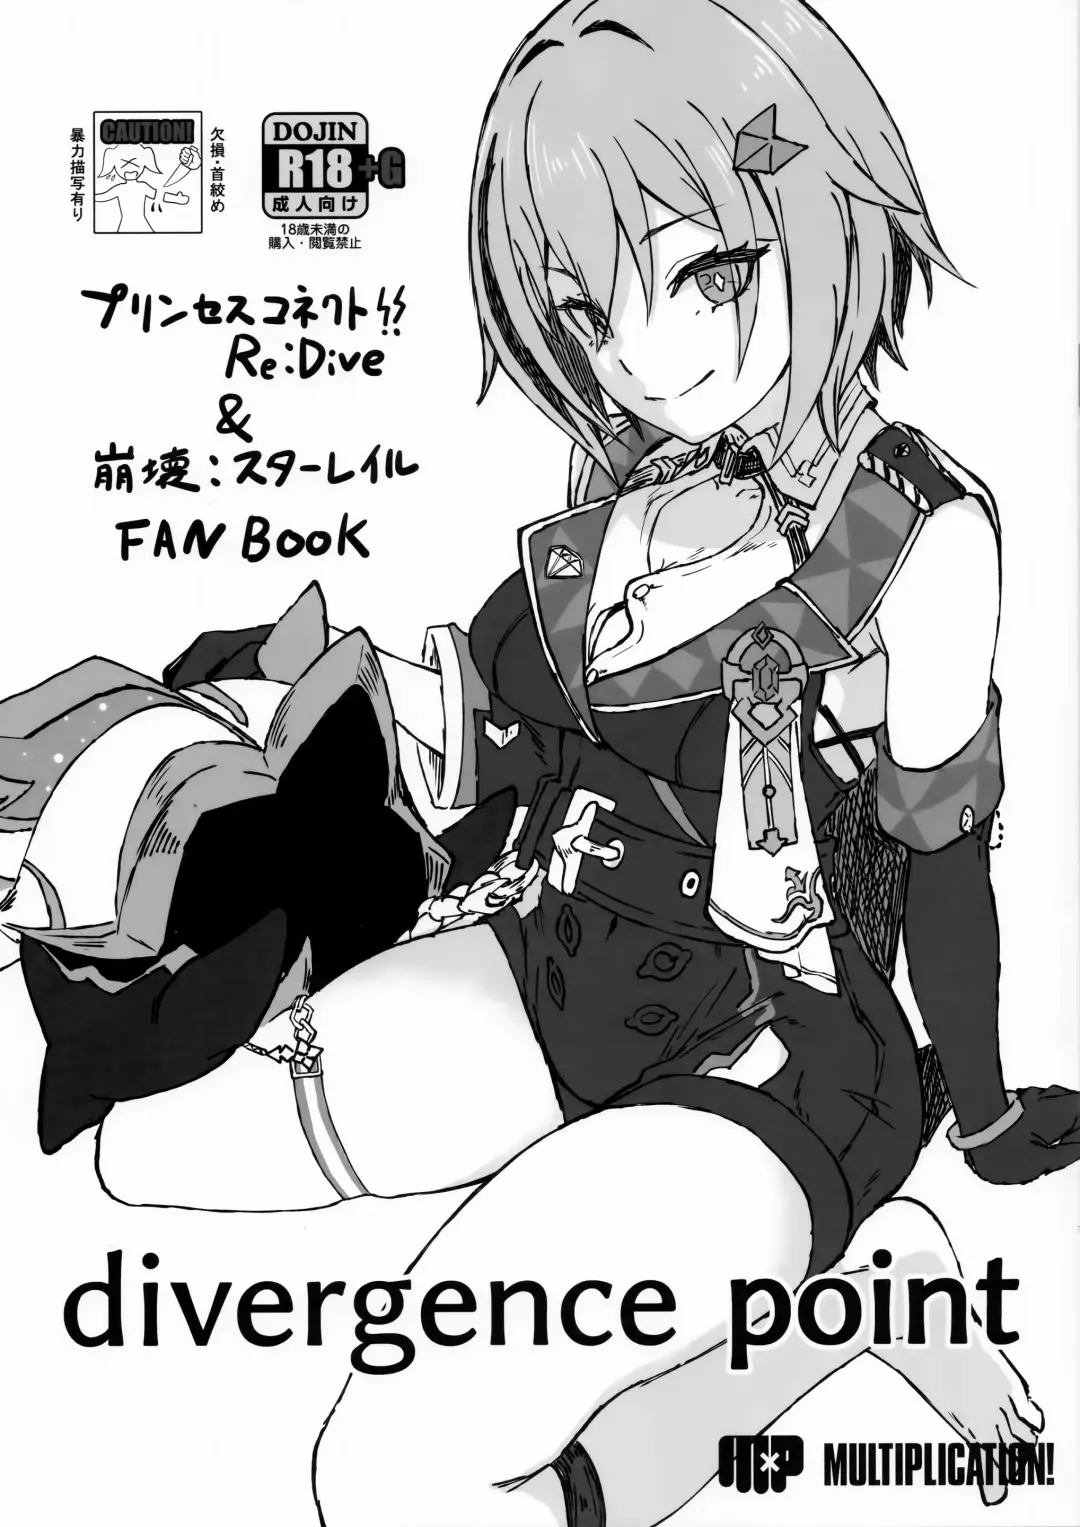 Read [3x3] divergence point - Fhentai.net